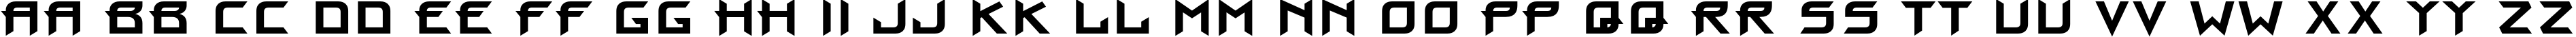 Пример написания английского алфавита шрифтом ProunC Bold